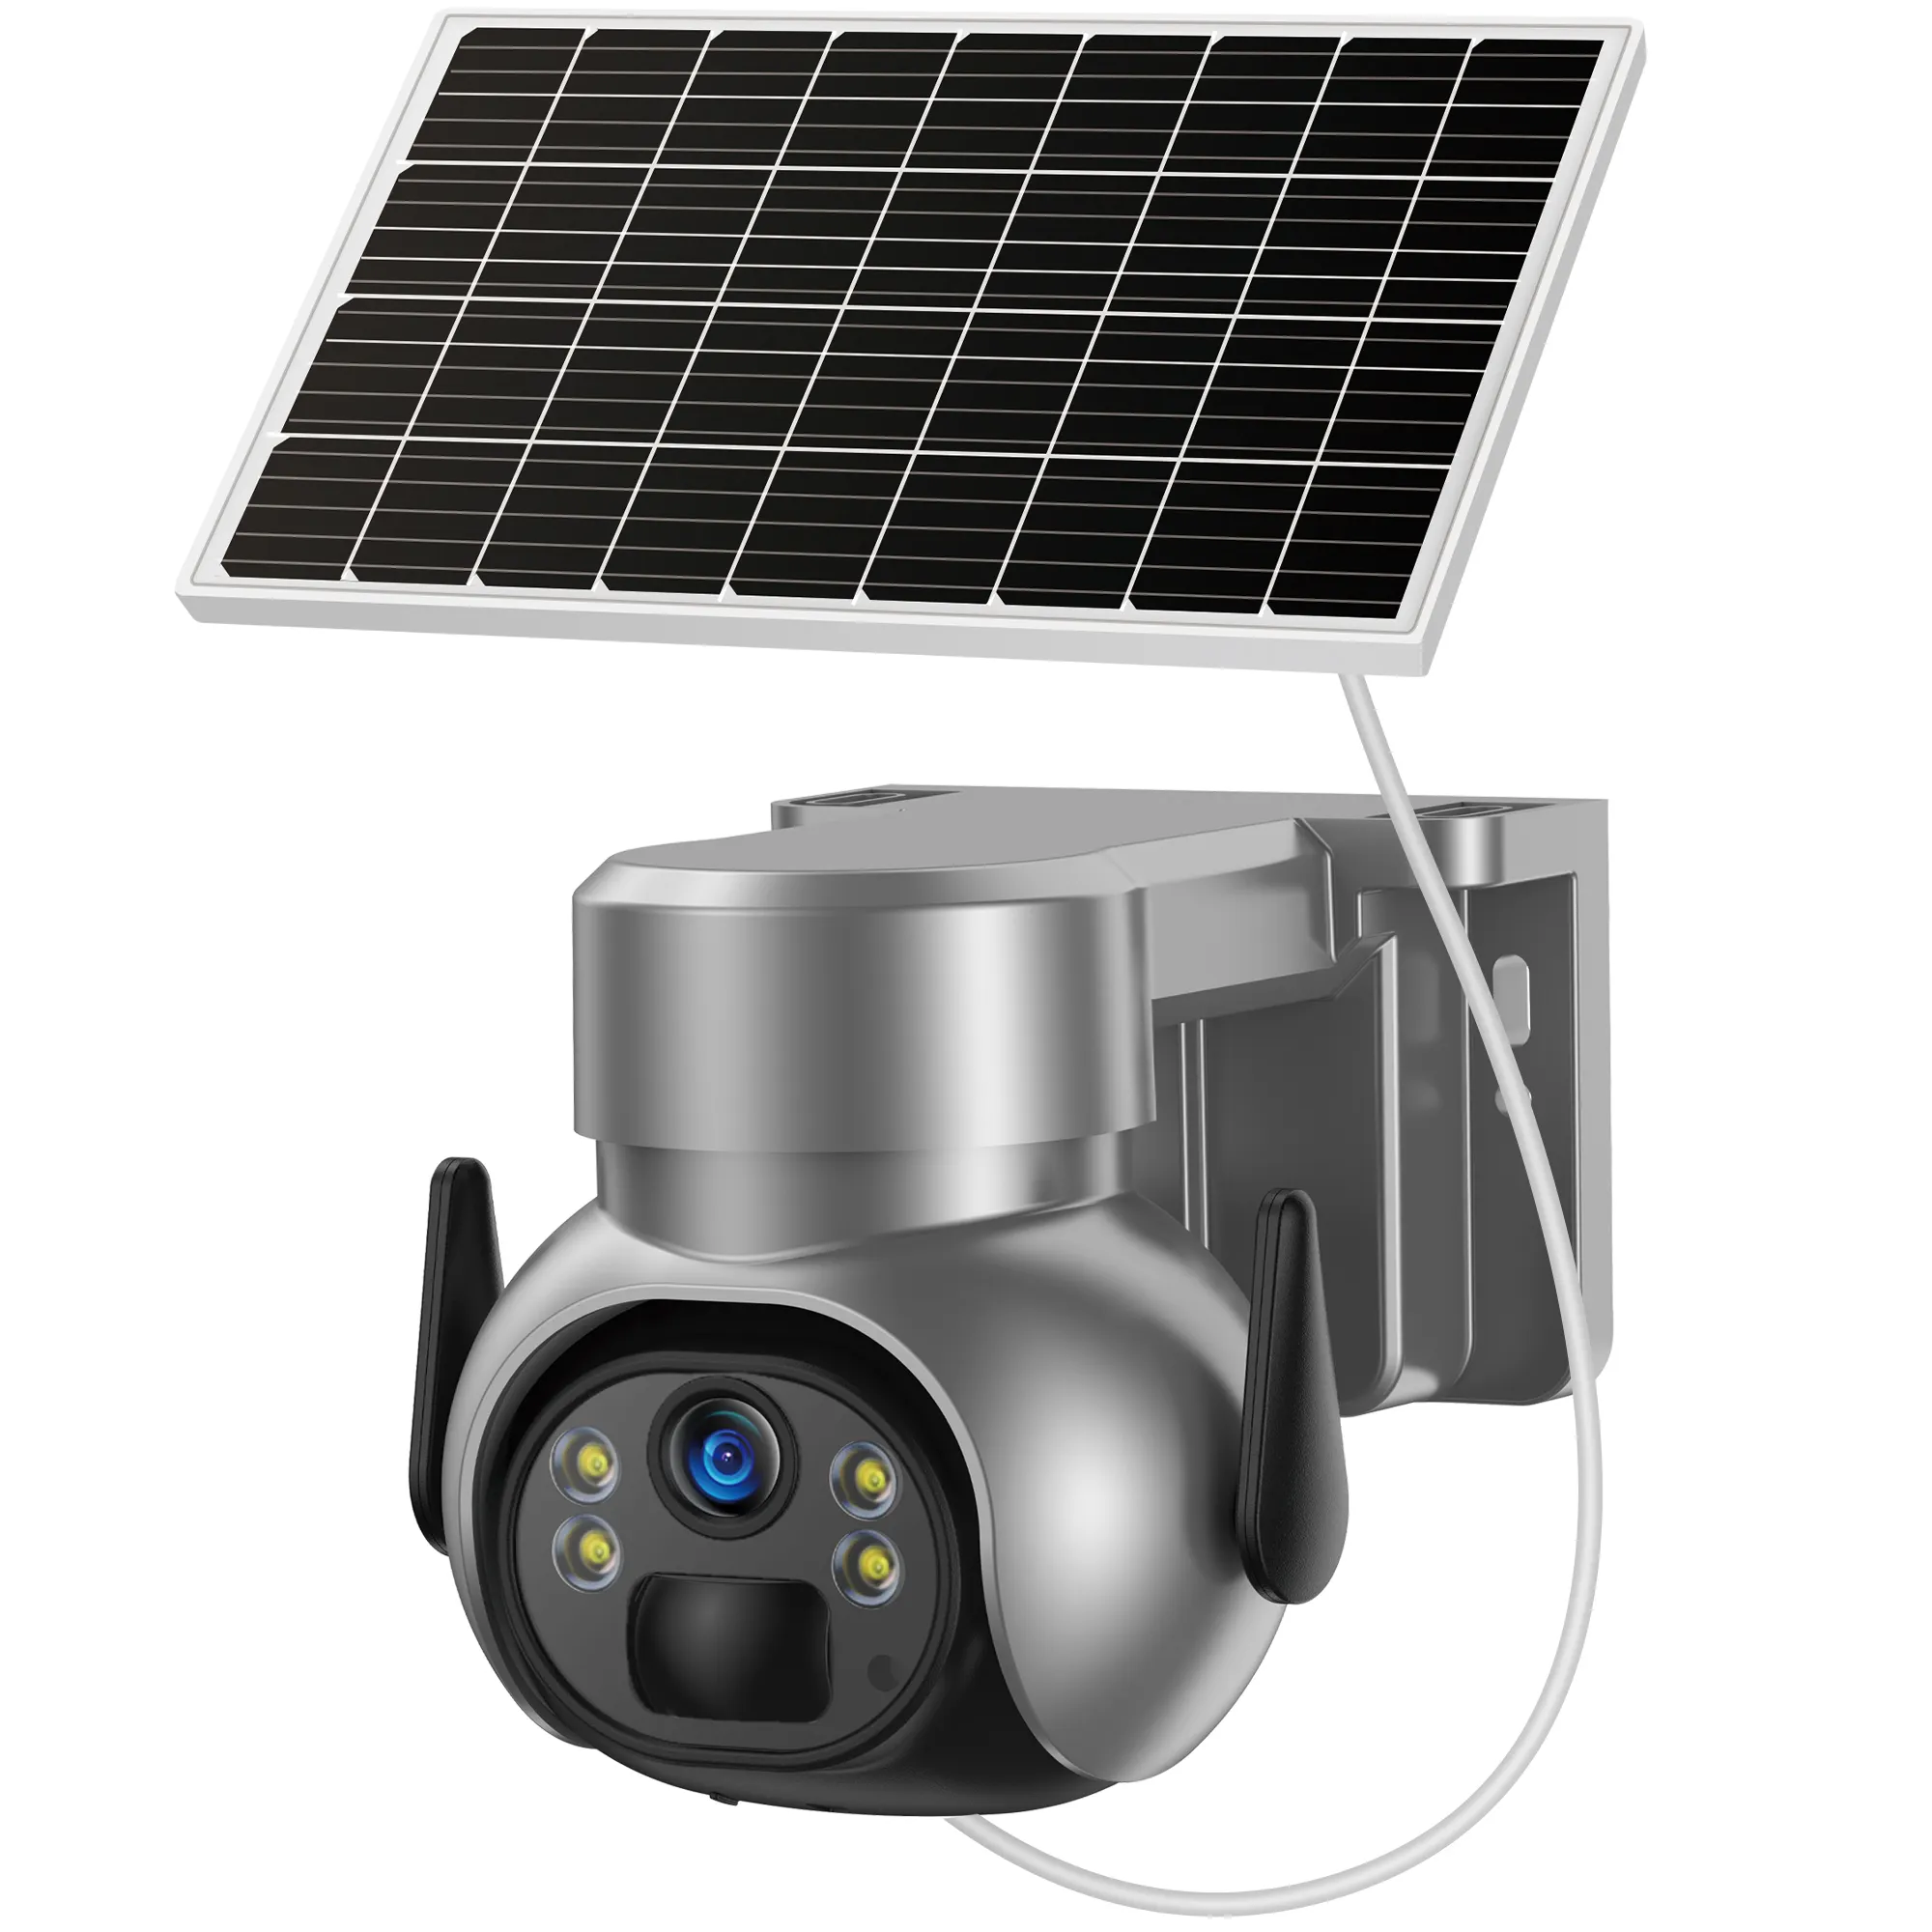 Bestseller Solarkamera 4 MP PT IP Kamera Überwachung Sicherheit CCTV Netzwerk Kamera